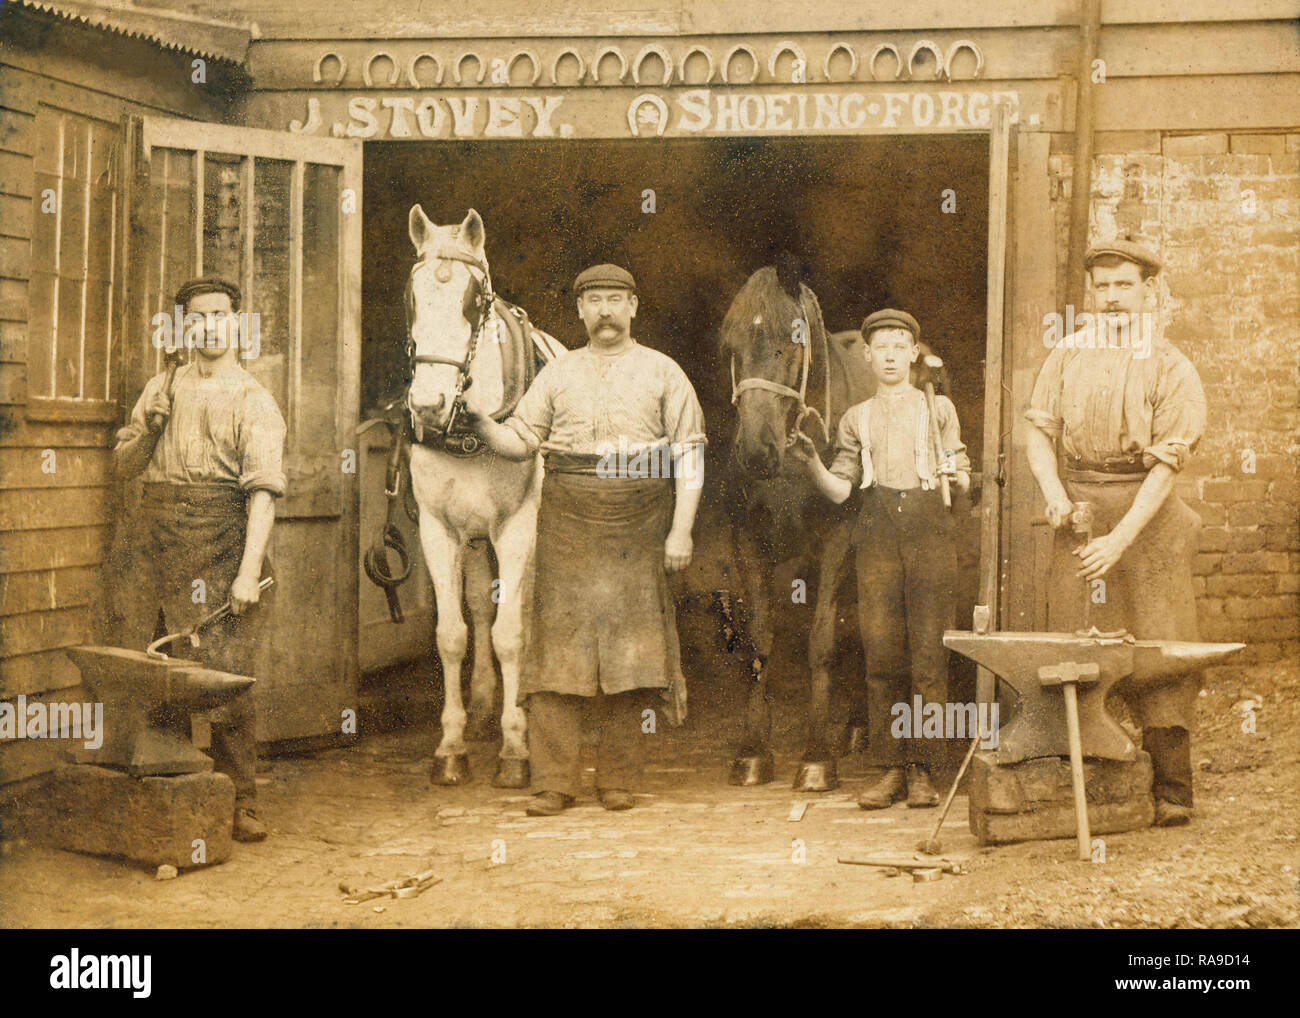 Historisches Archiv Bild der hufschmiede an hufbeschlag Schmieden, Schmiede, Bournemouth, Dorset, c 1900 s Stockfoto